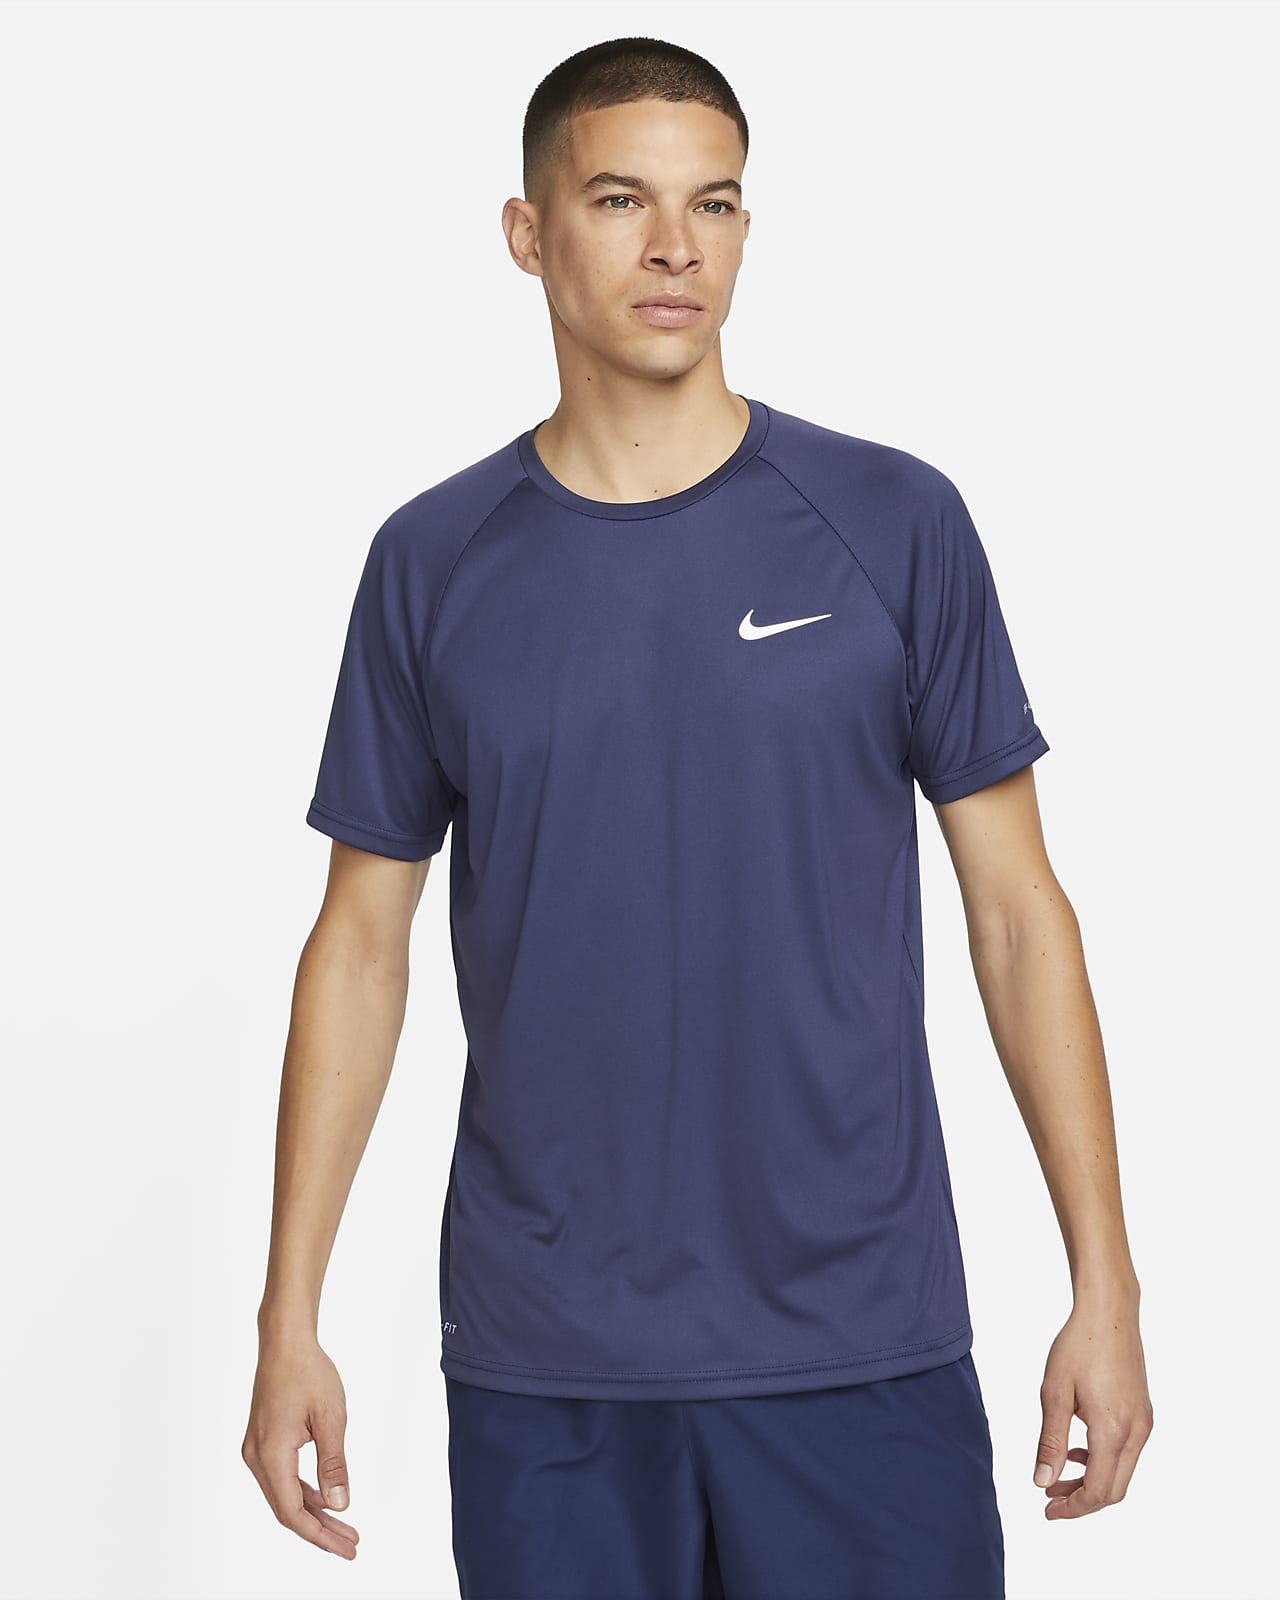 Nike Mens Dry Yoga T-Shirt - Blue